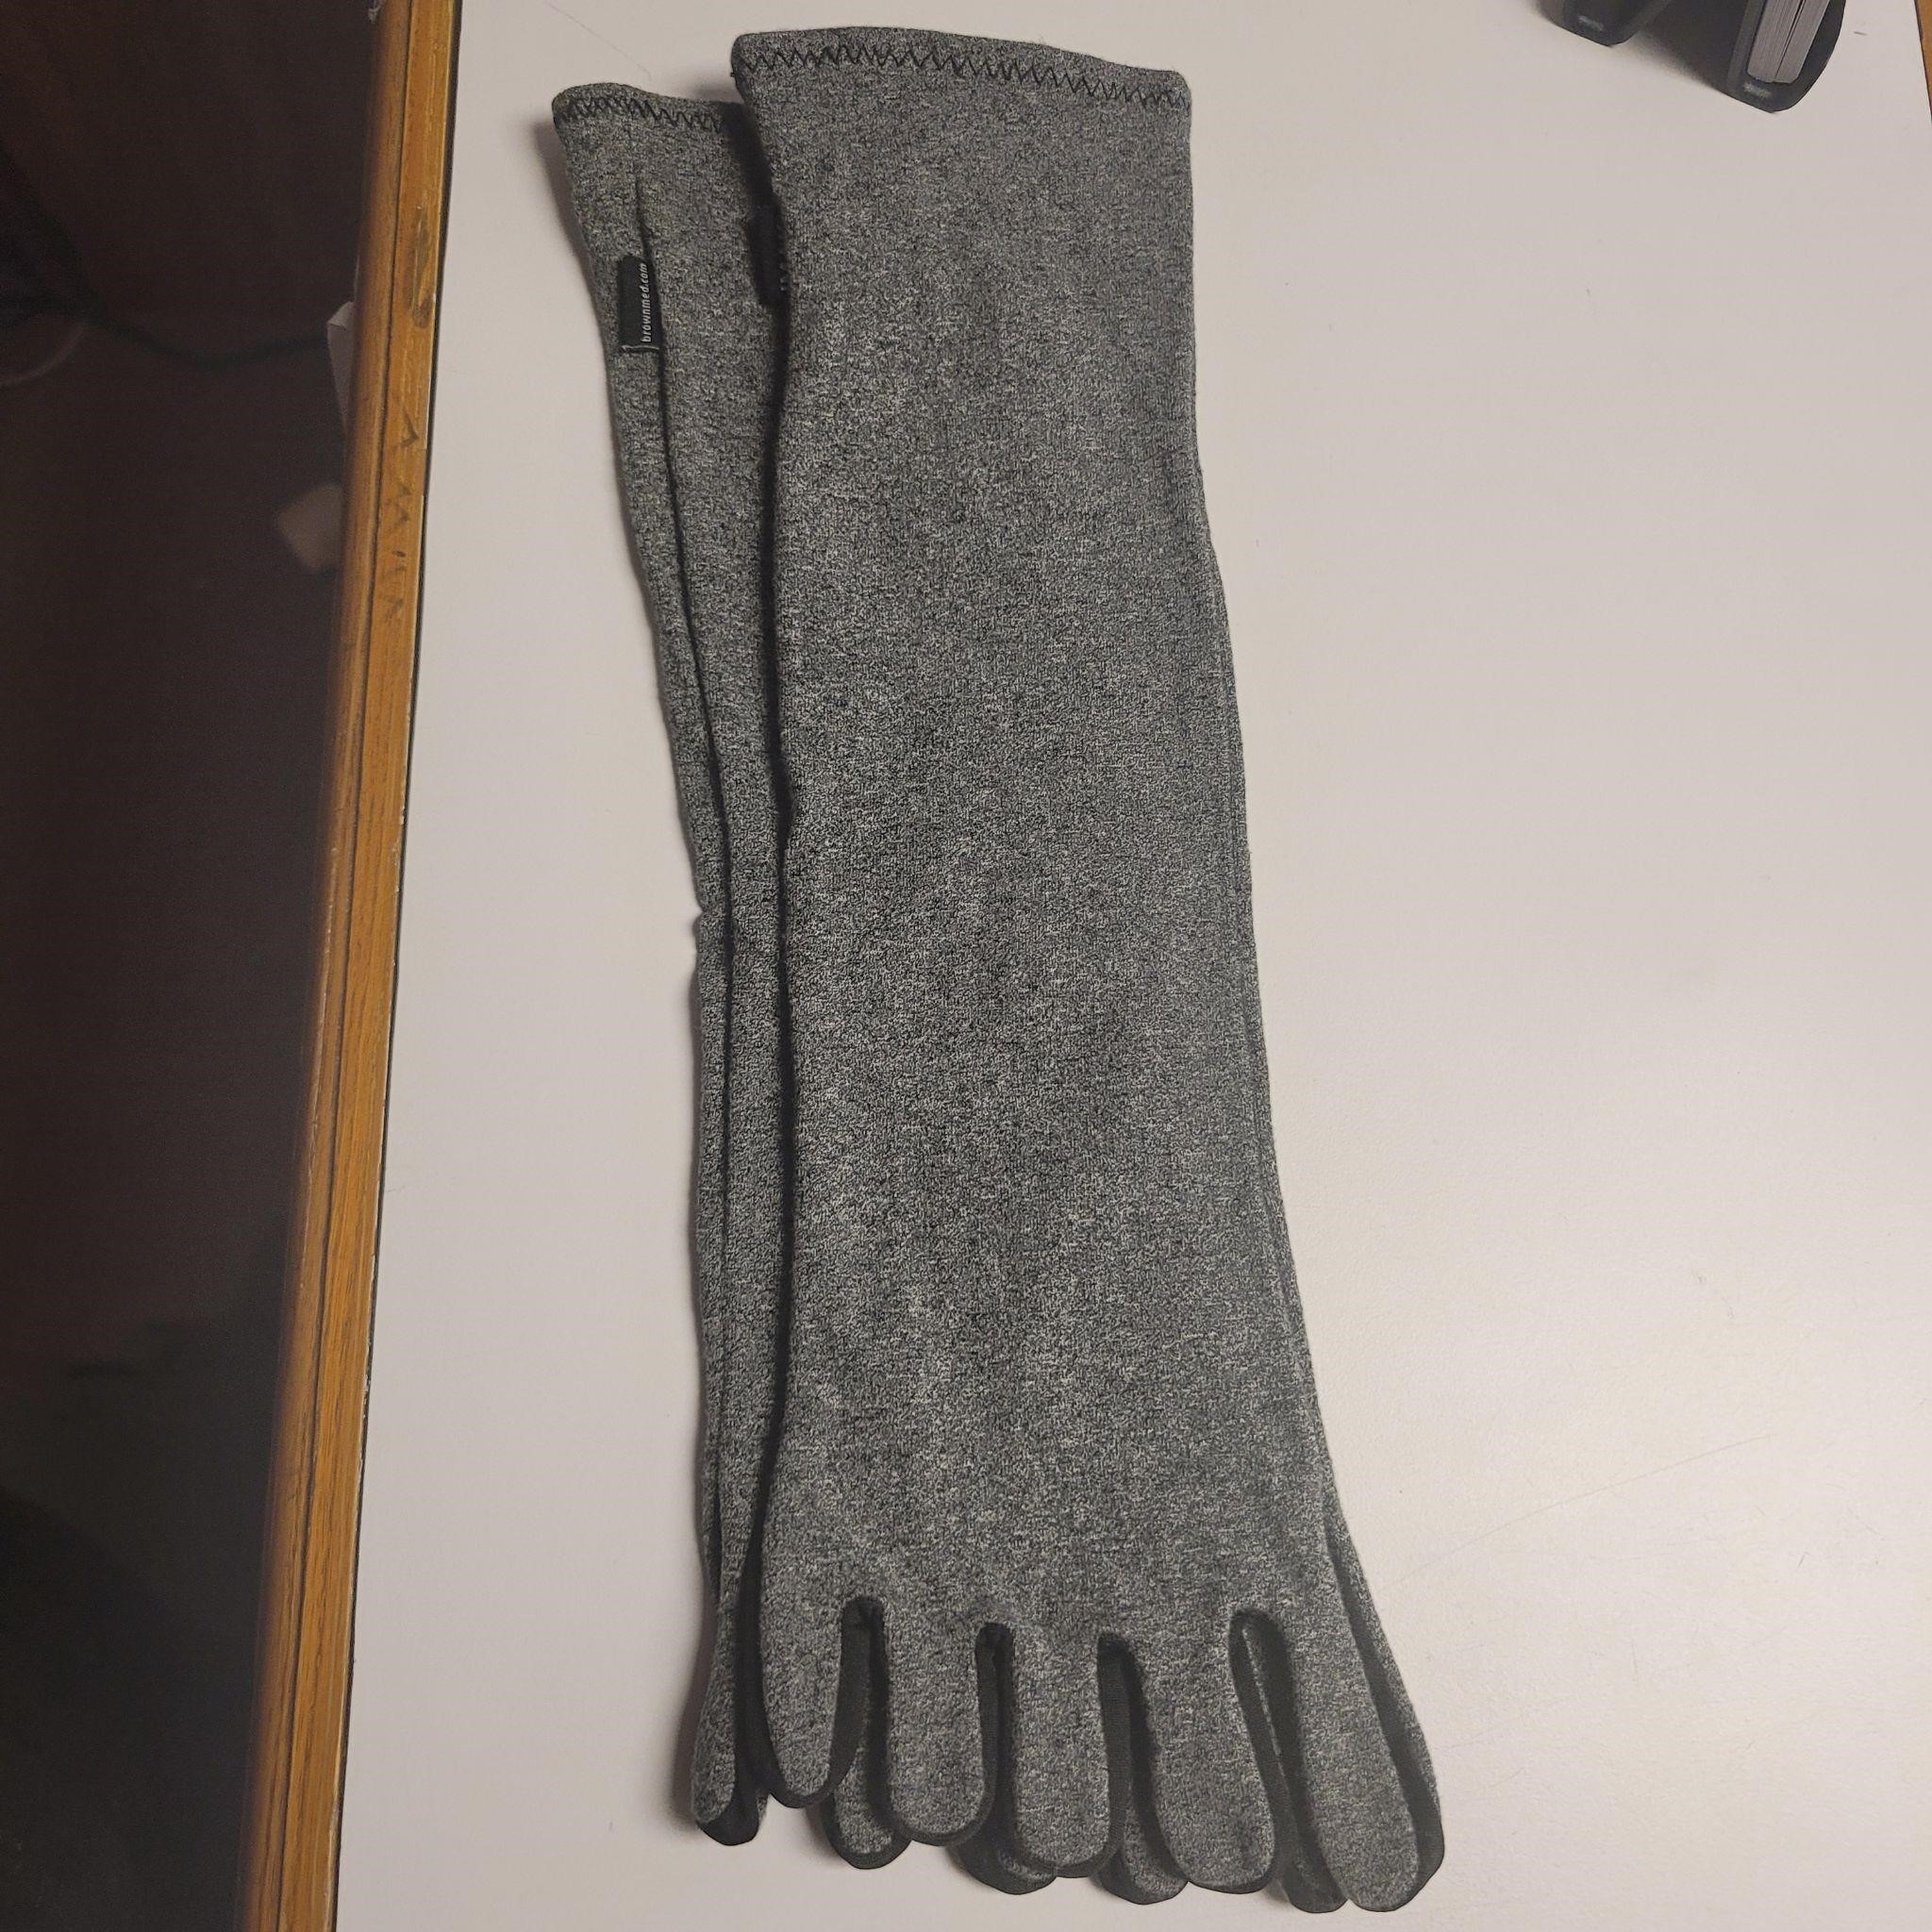 Imak Compression arthritis socks. Large, unused